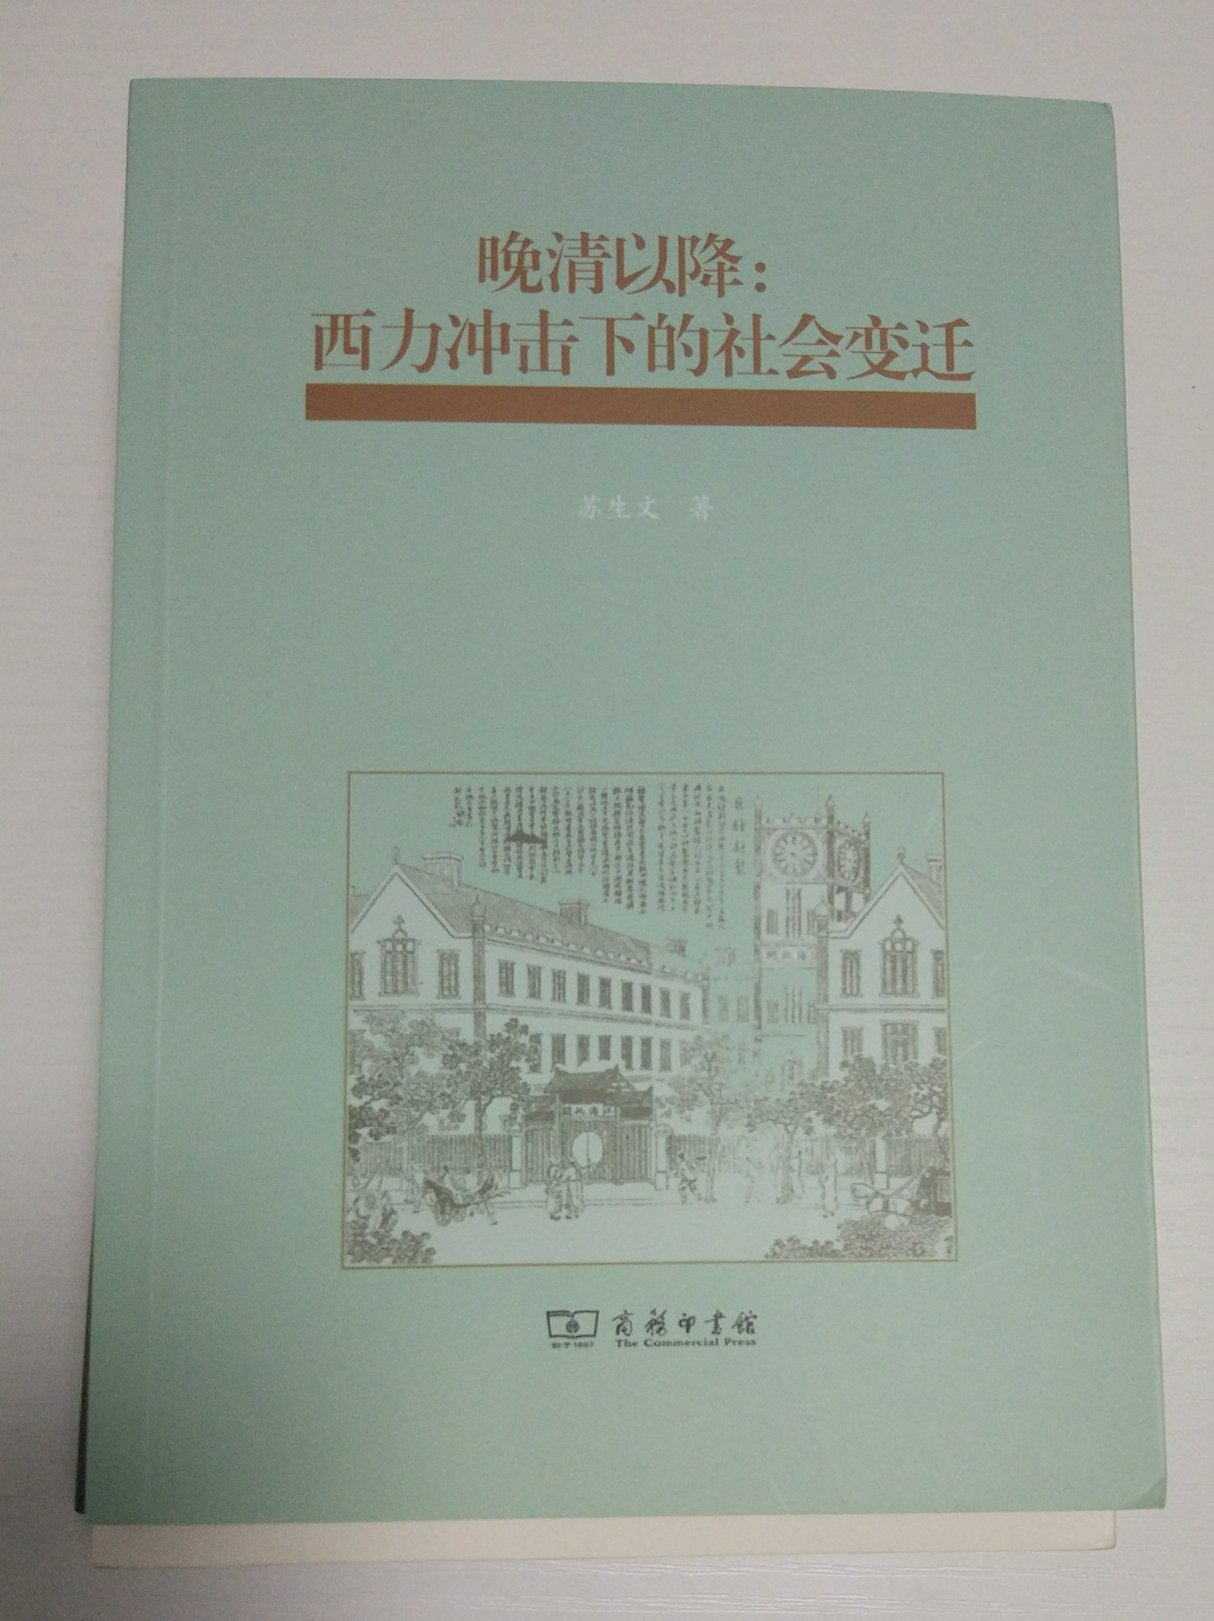 自1840年以来，中华大地发生了翻天覆地的变化，那段历史也是中华民族的血泪史，这本书是商务印书馆微信公众号推荐的，买回来看看。